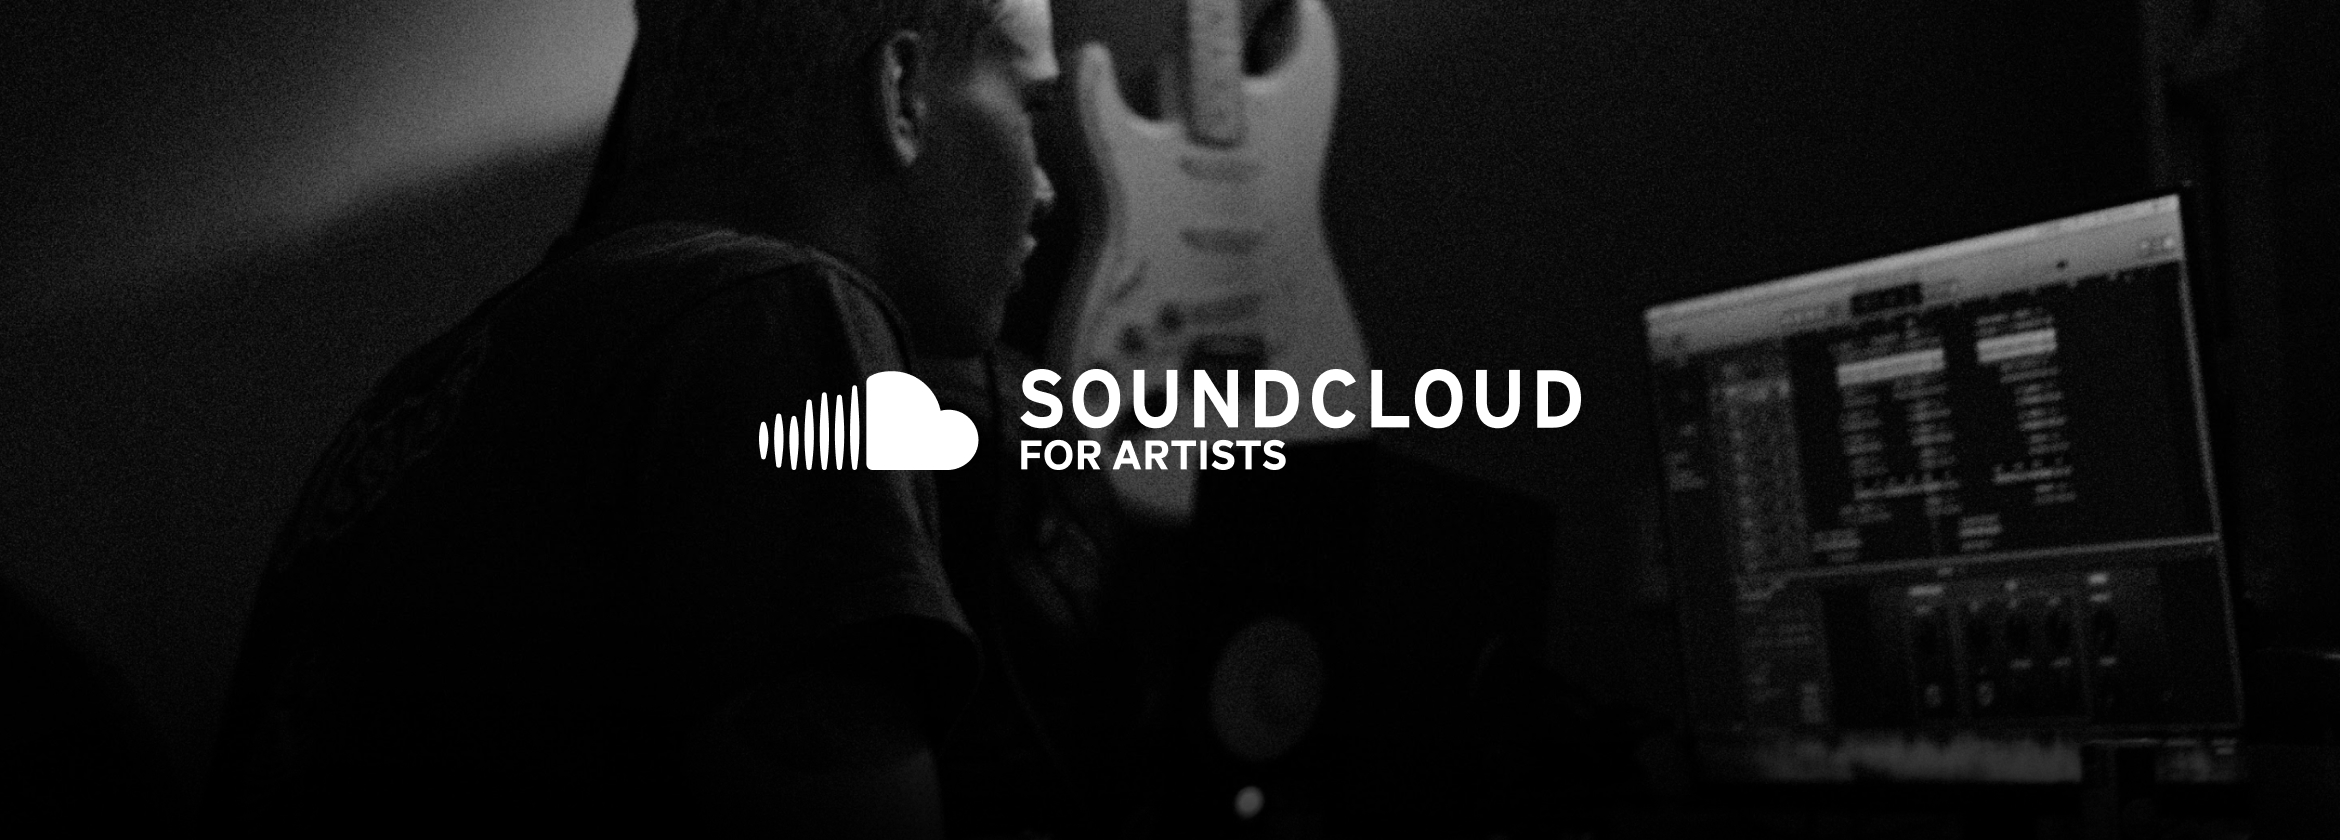 SoundCloud for Artists vs. RouteNote – SoundCloud rebrand their artist platform